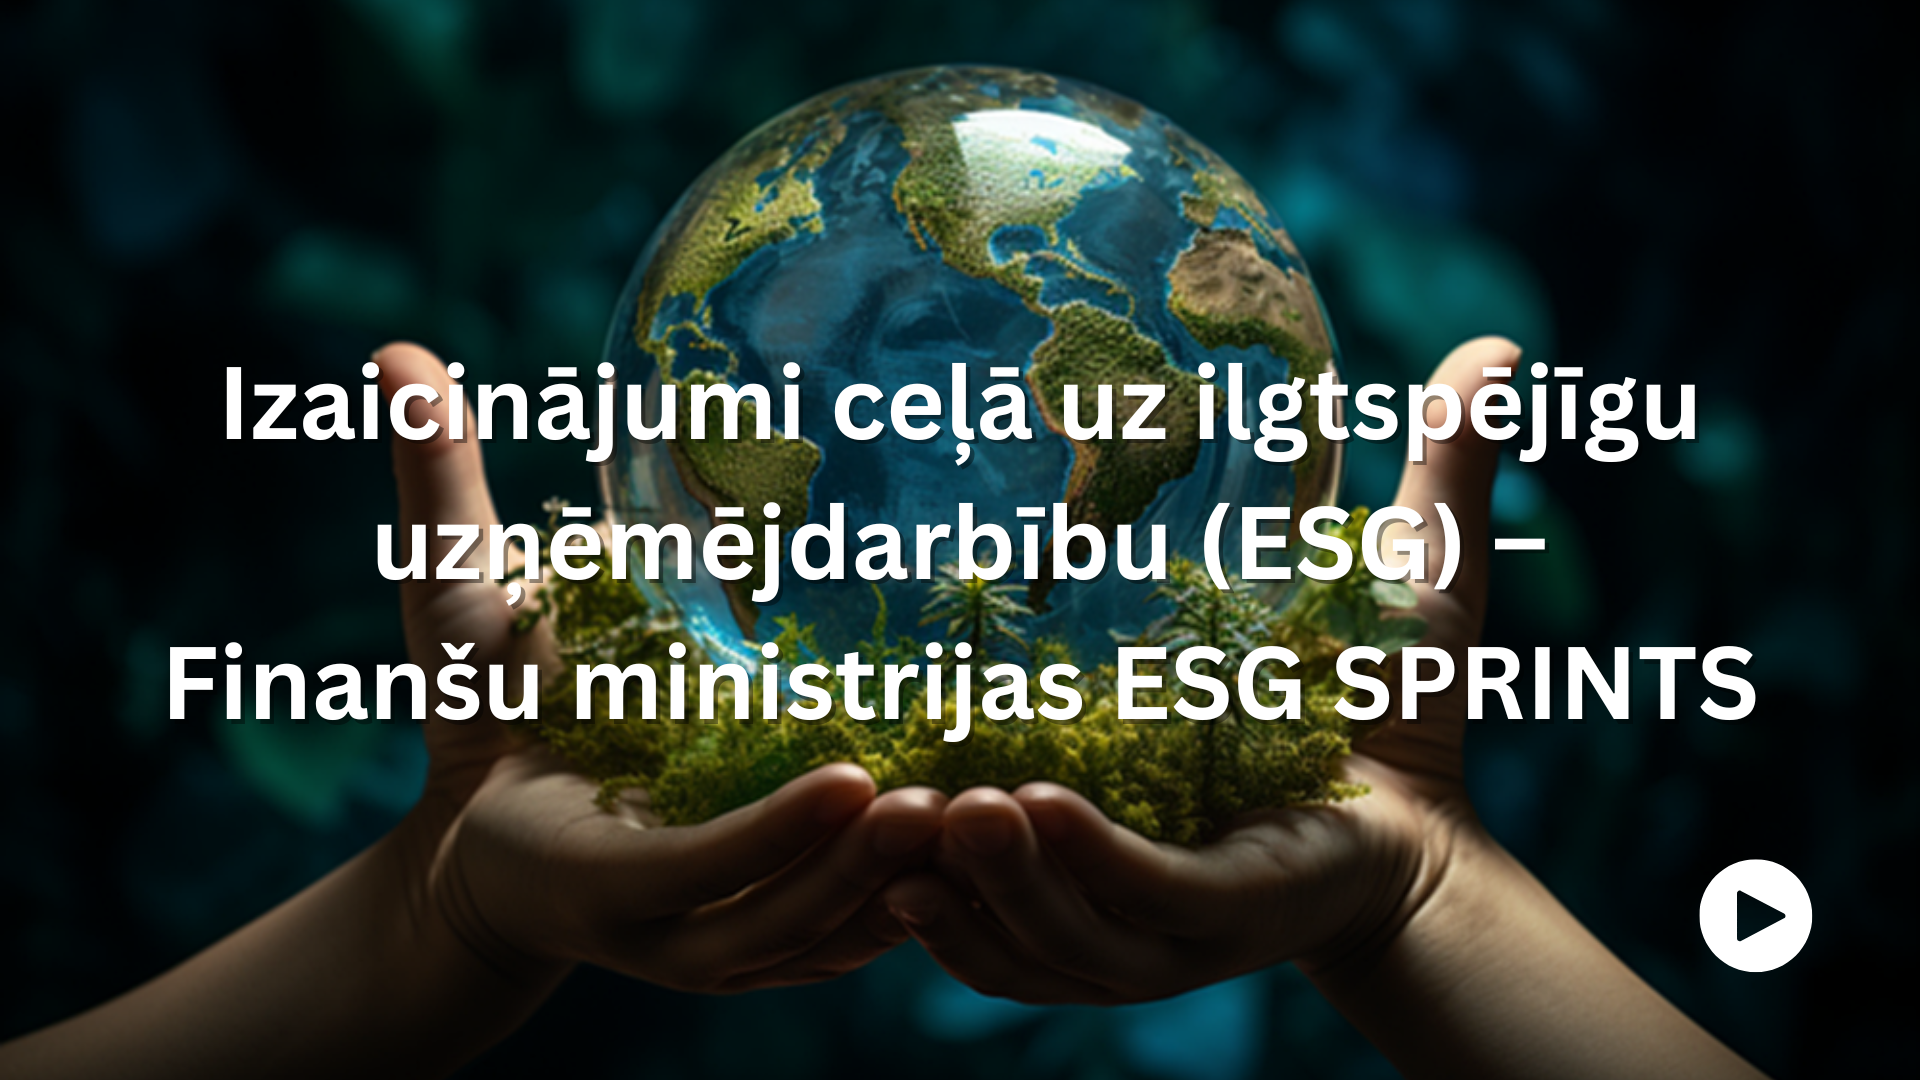 Izaicinājumi ceļā uz ilgtspējīgu uzņēmējdarbību (ESG) – Finanšu ministrijas ESG SPRINTS. Attēlā plaukstās tiek turēta stikla lode, kas ataino zemeslodi